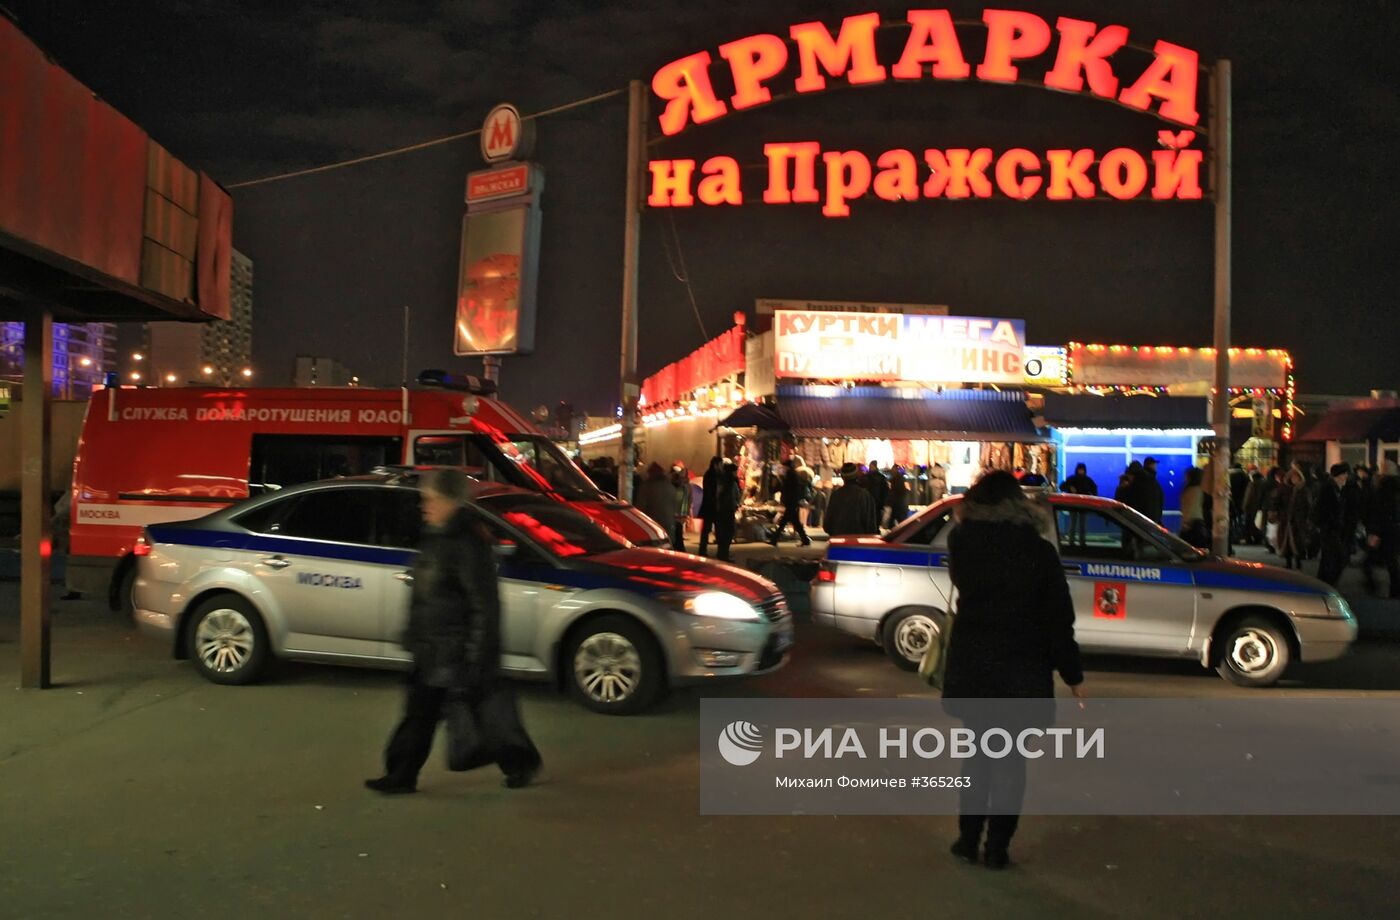 На месте взрыва на рынке в Москве